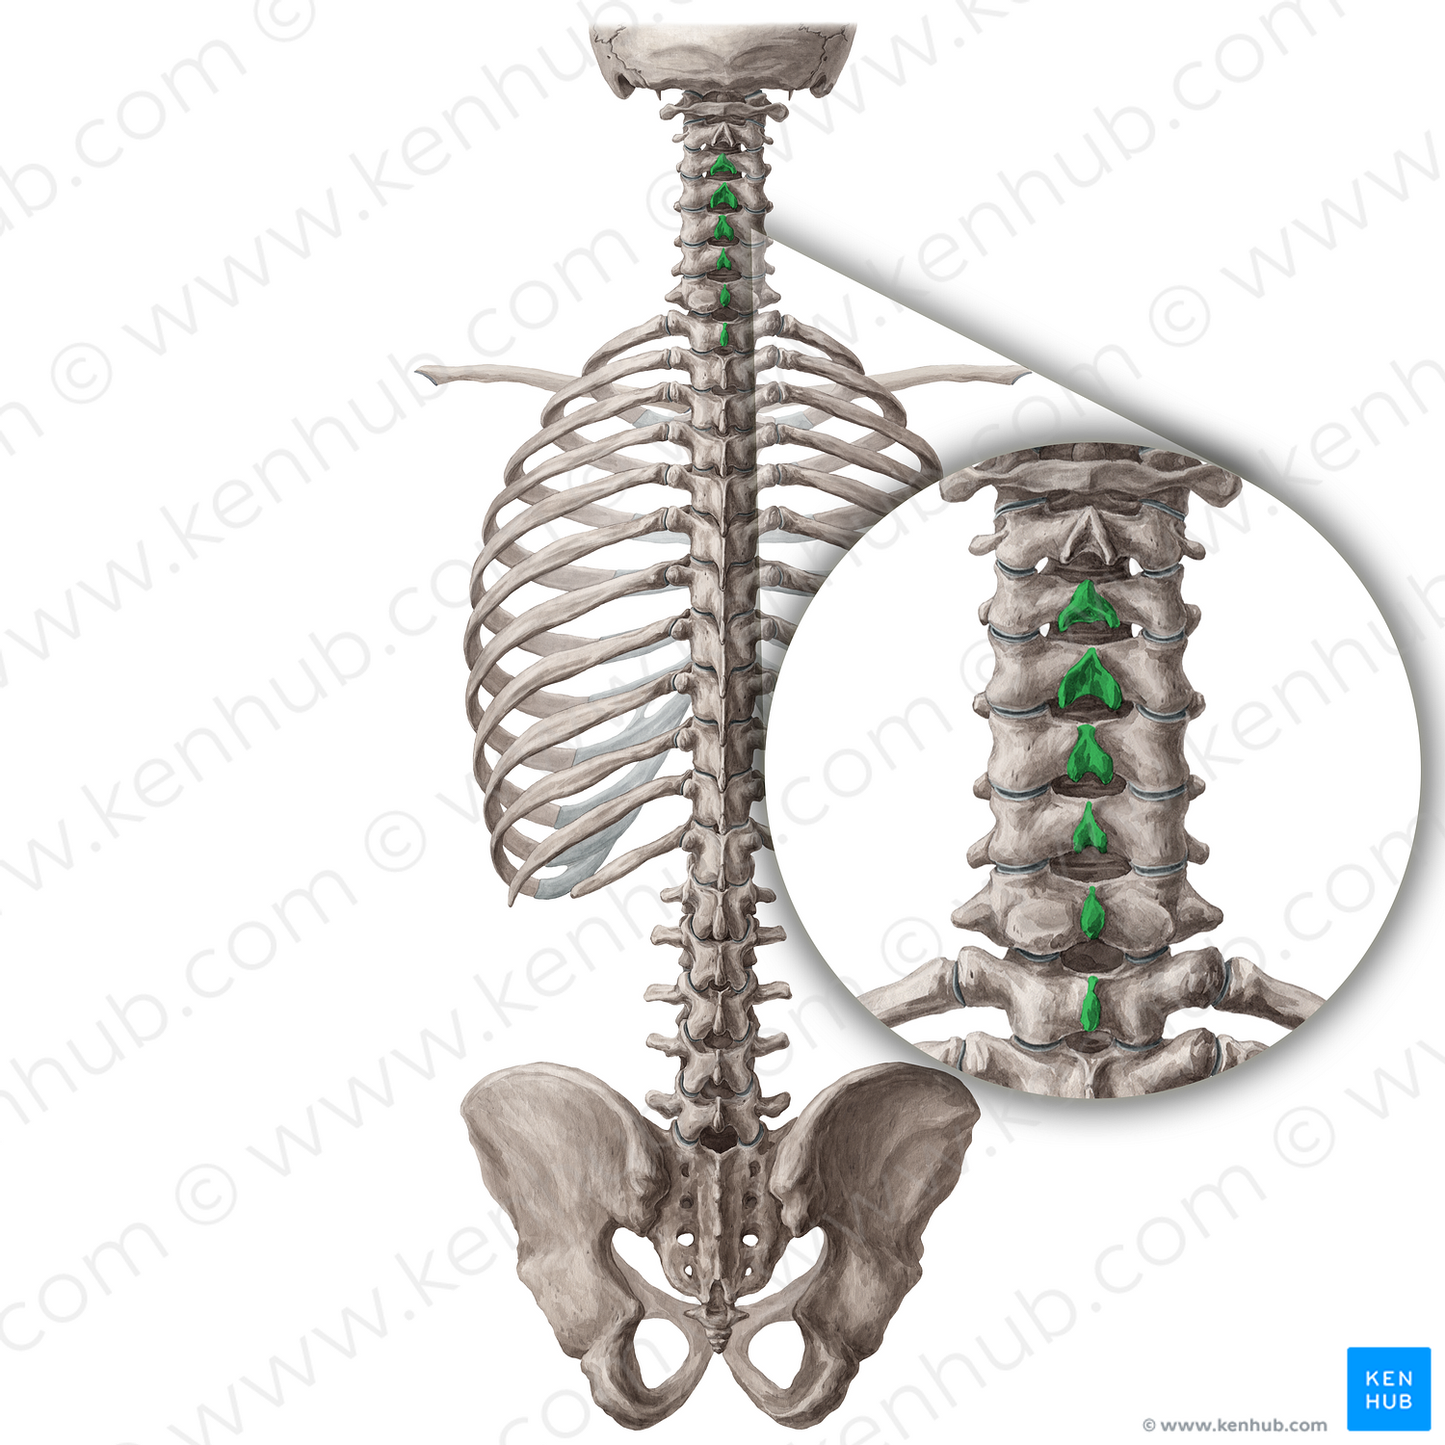 Spinous processes of vertebrae C3-T1 (#19754)